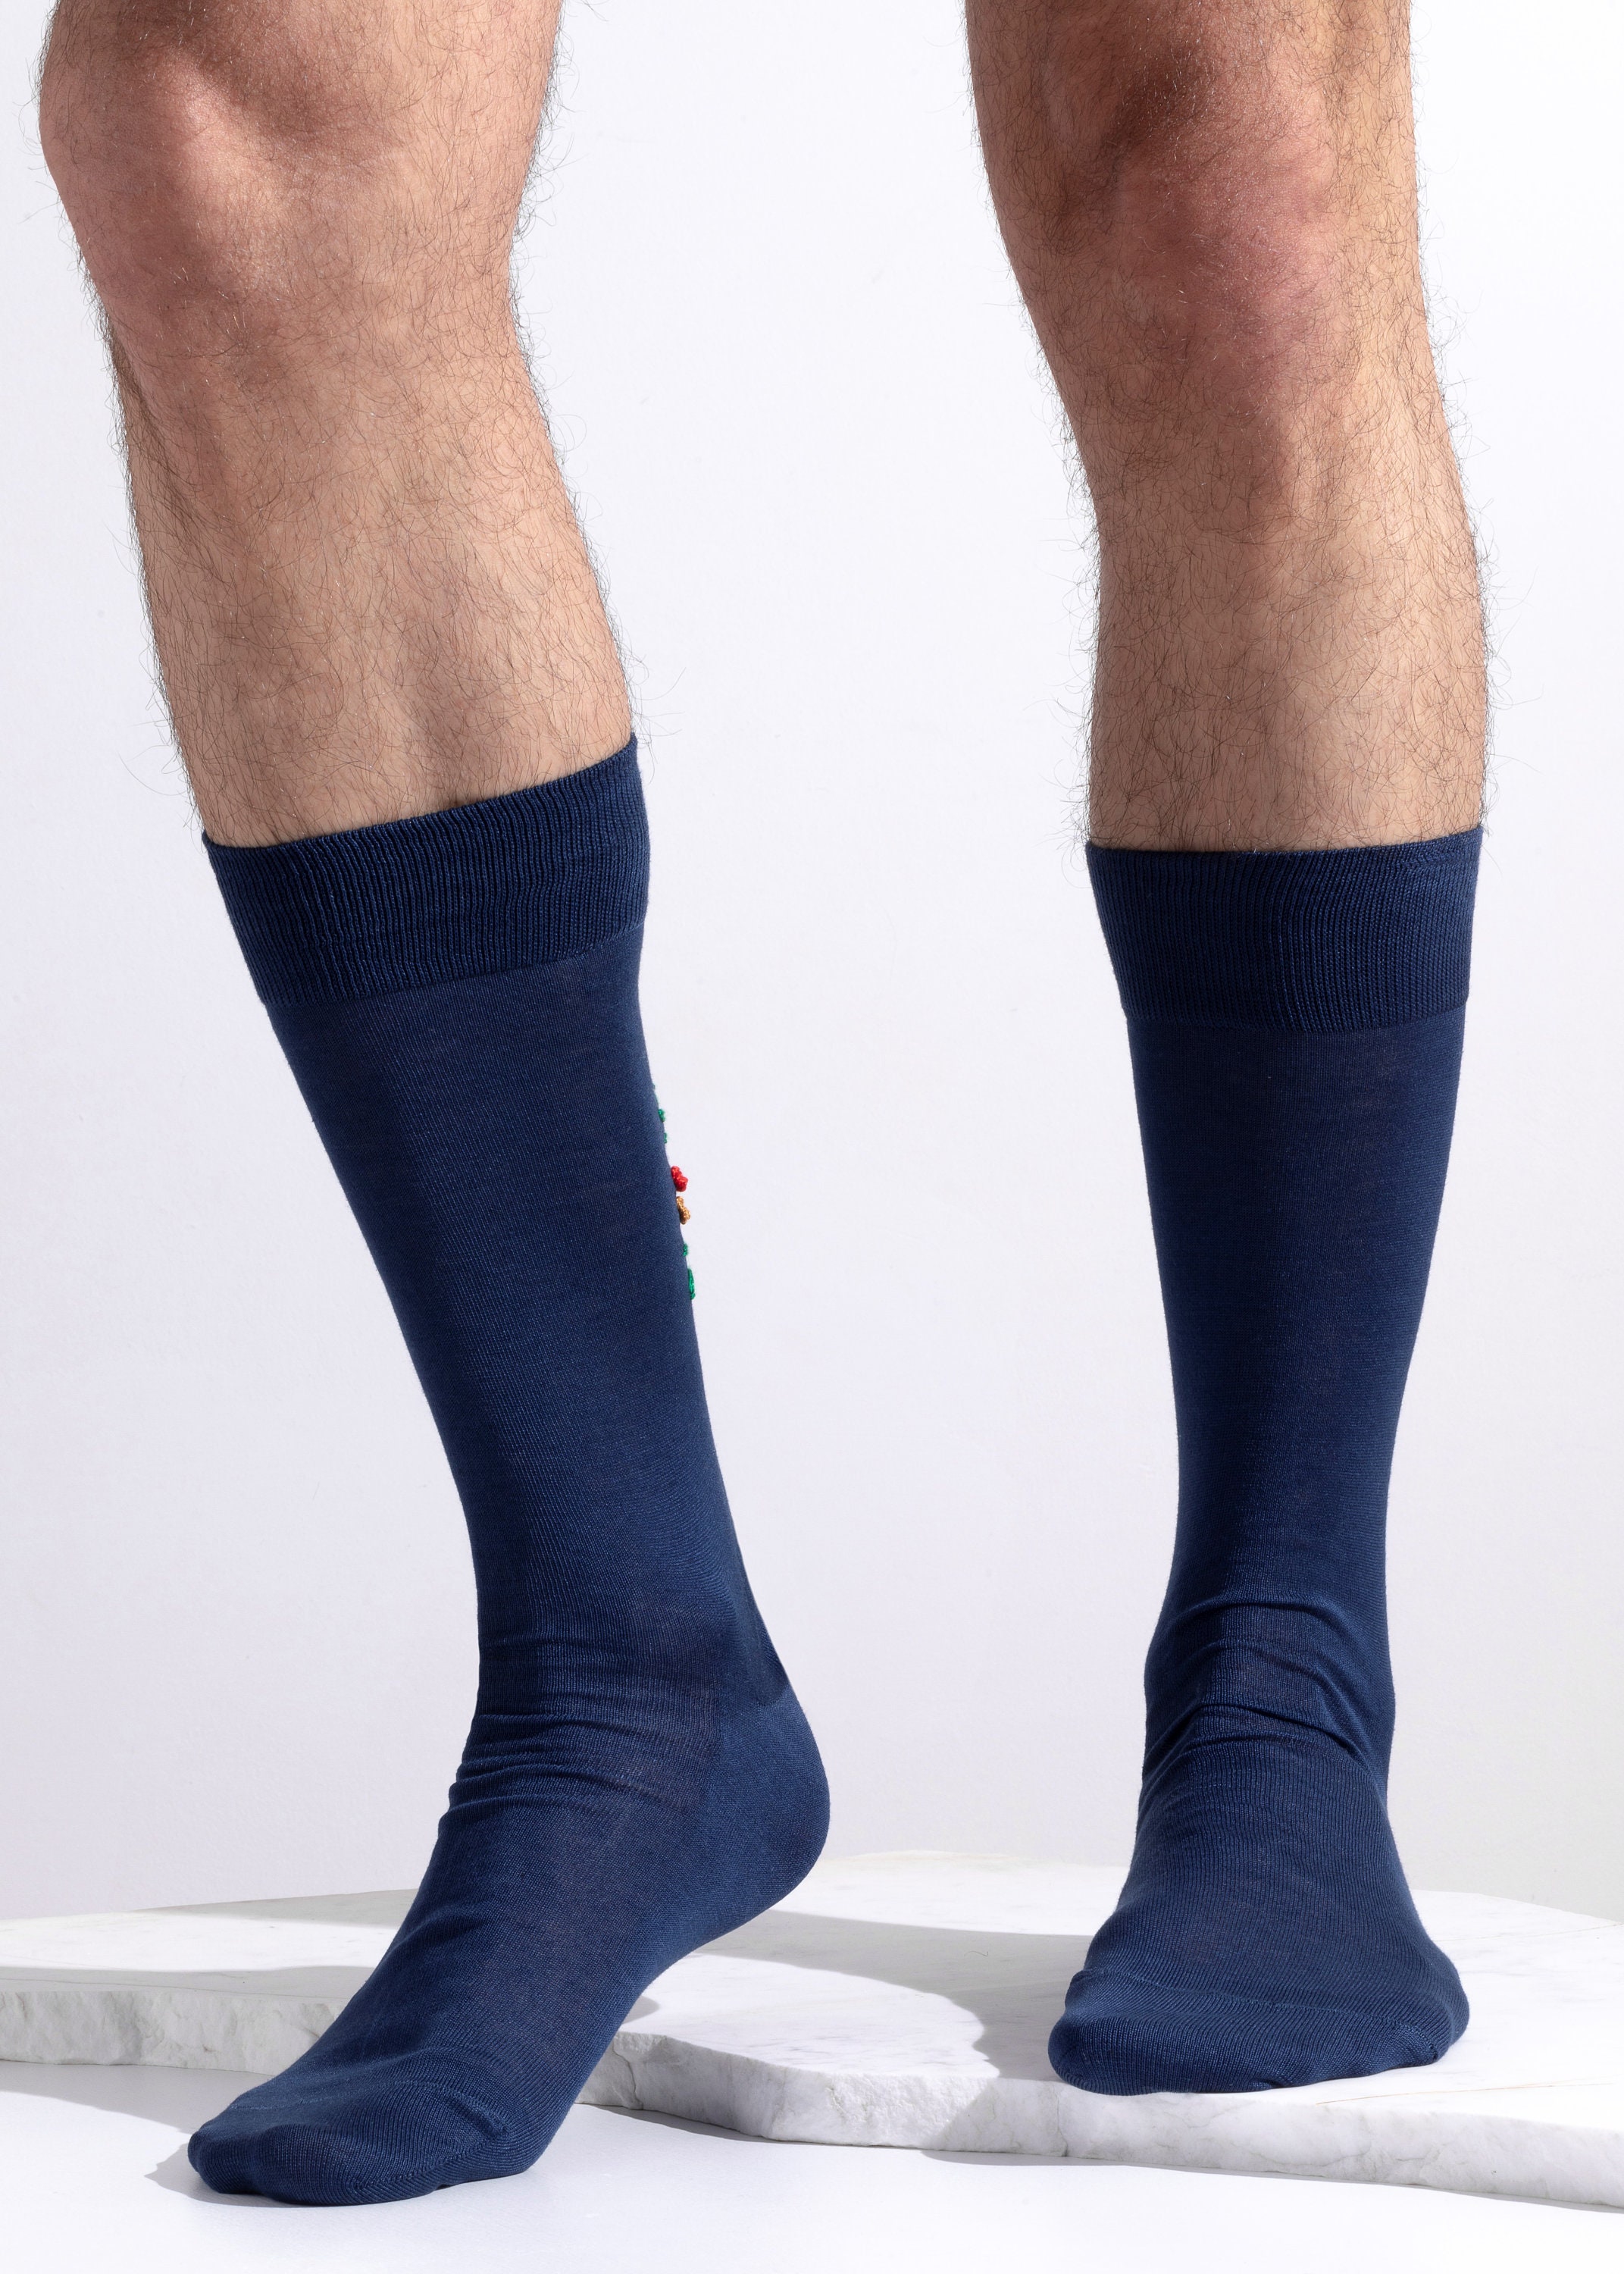 Hand embroidered Men's Socks Cool socks for him | Etsy